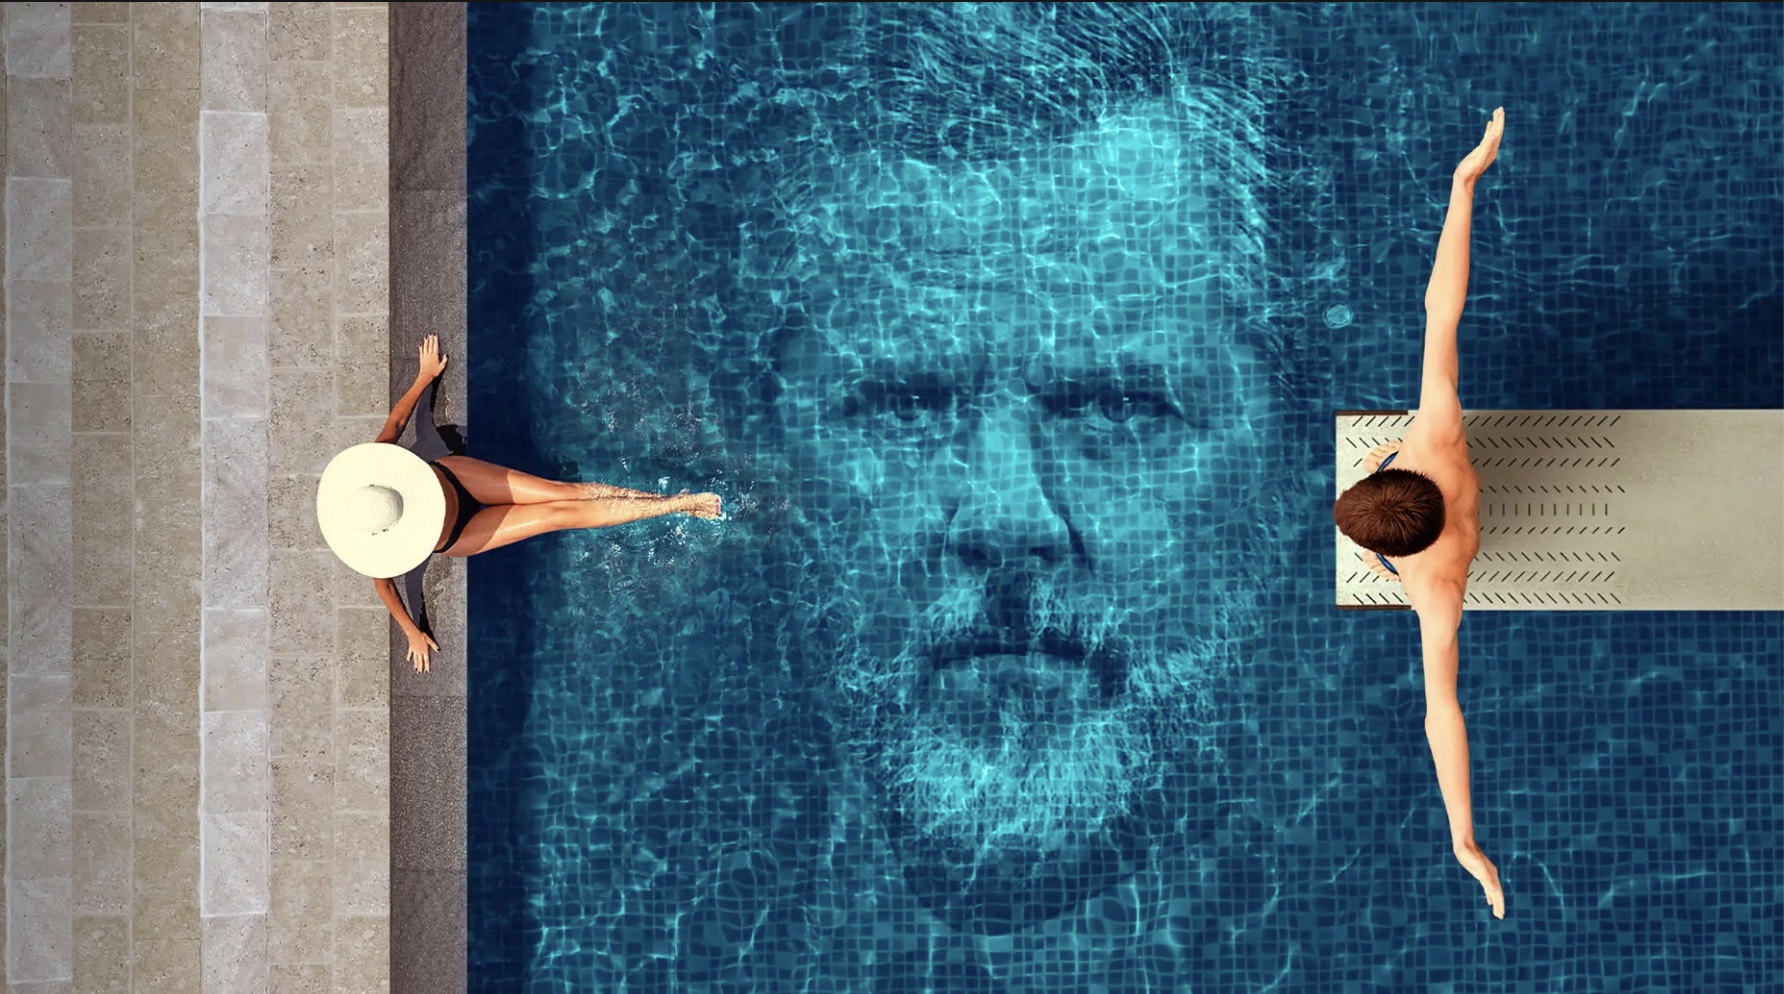 Un hombre y una mujer se sientan junto a una piscina con la cara de Jerry Falwell Jr. en el agua.